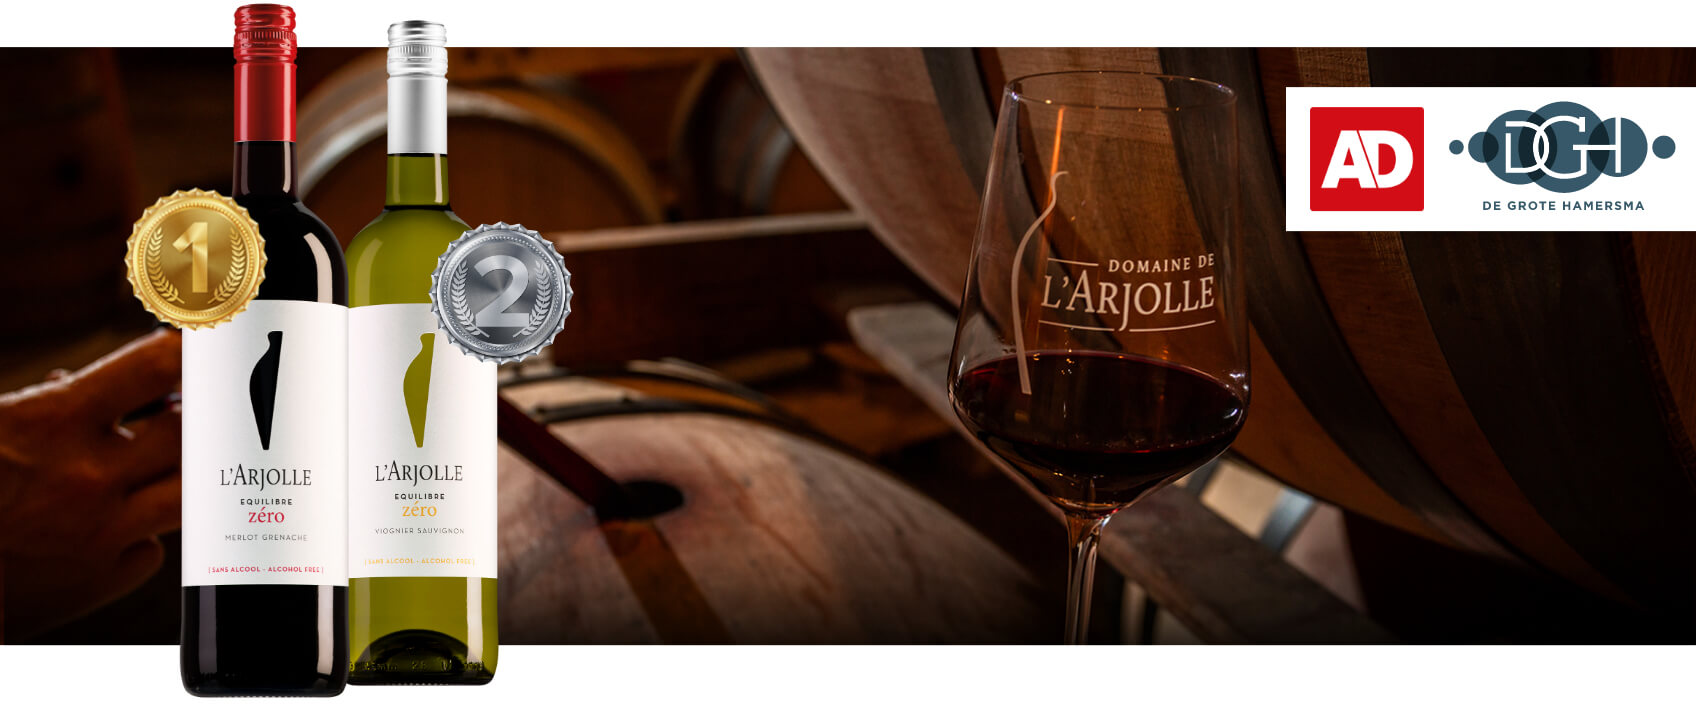 Als beste beoordeeld in de AD alcoholvrij-test: L’Arjolle Zéro!